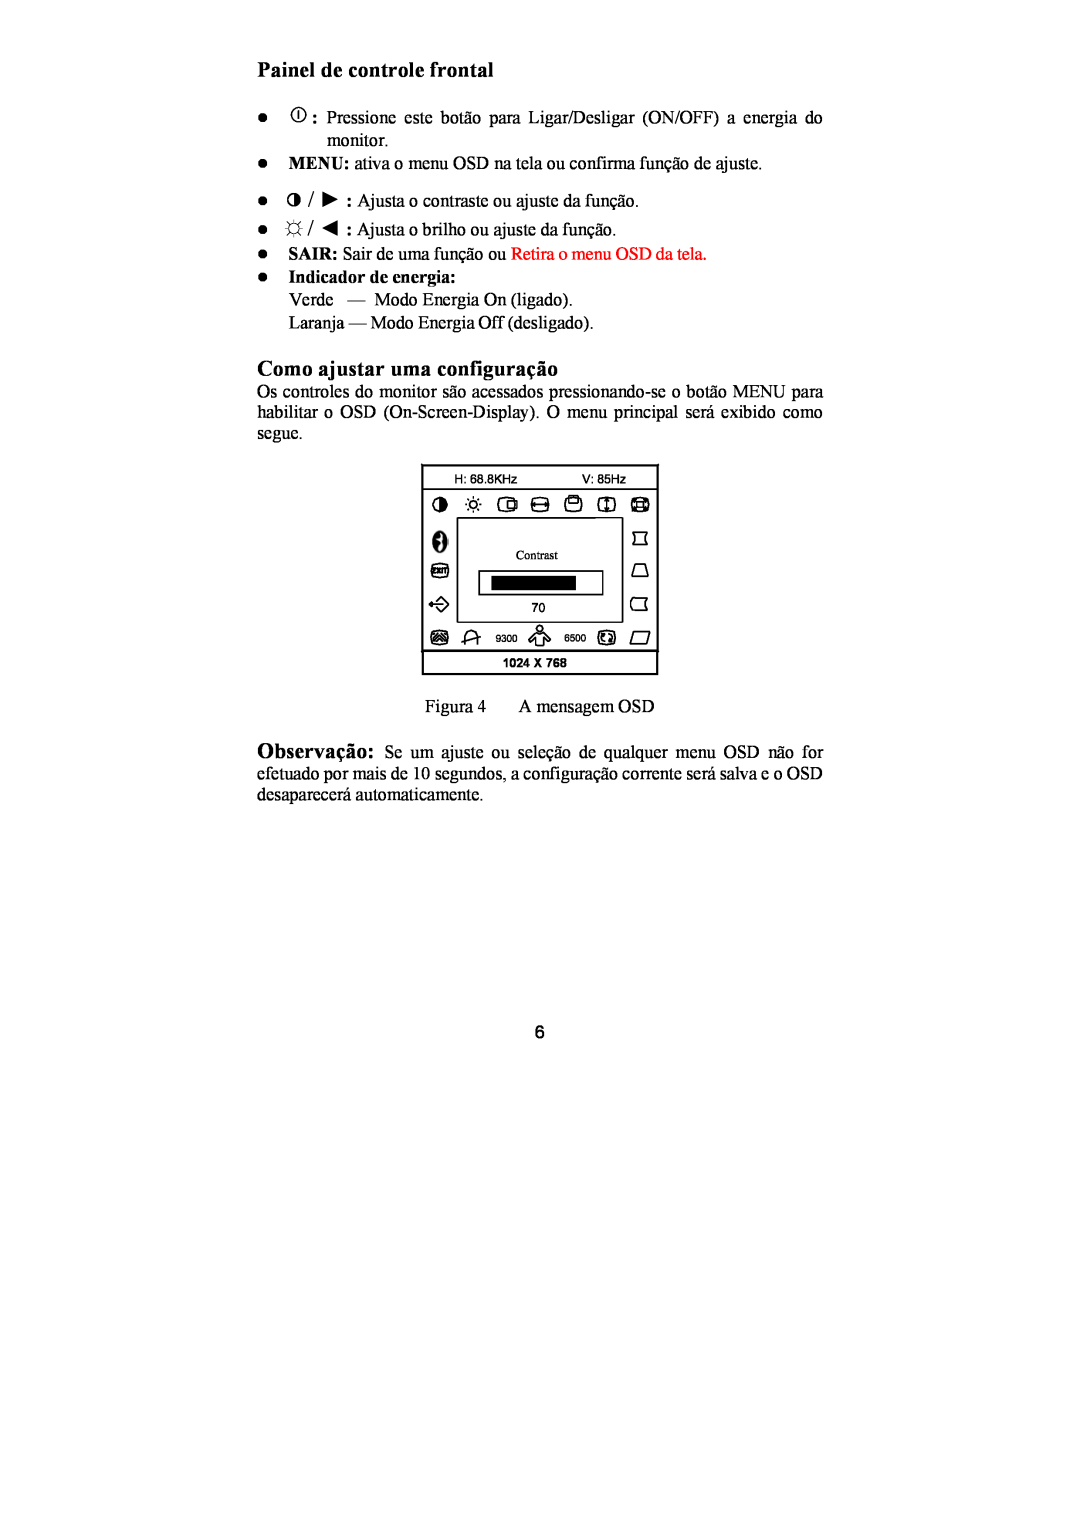 Philips 107E69 manual Painel de controle frontal, Como ajustar uma configuração, z Indicador de energia 